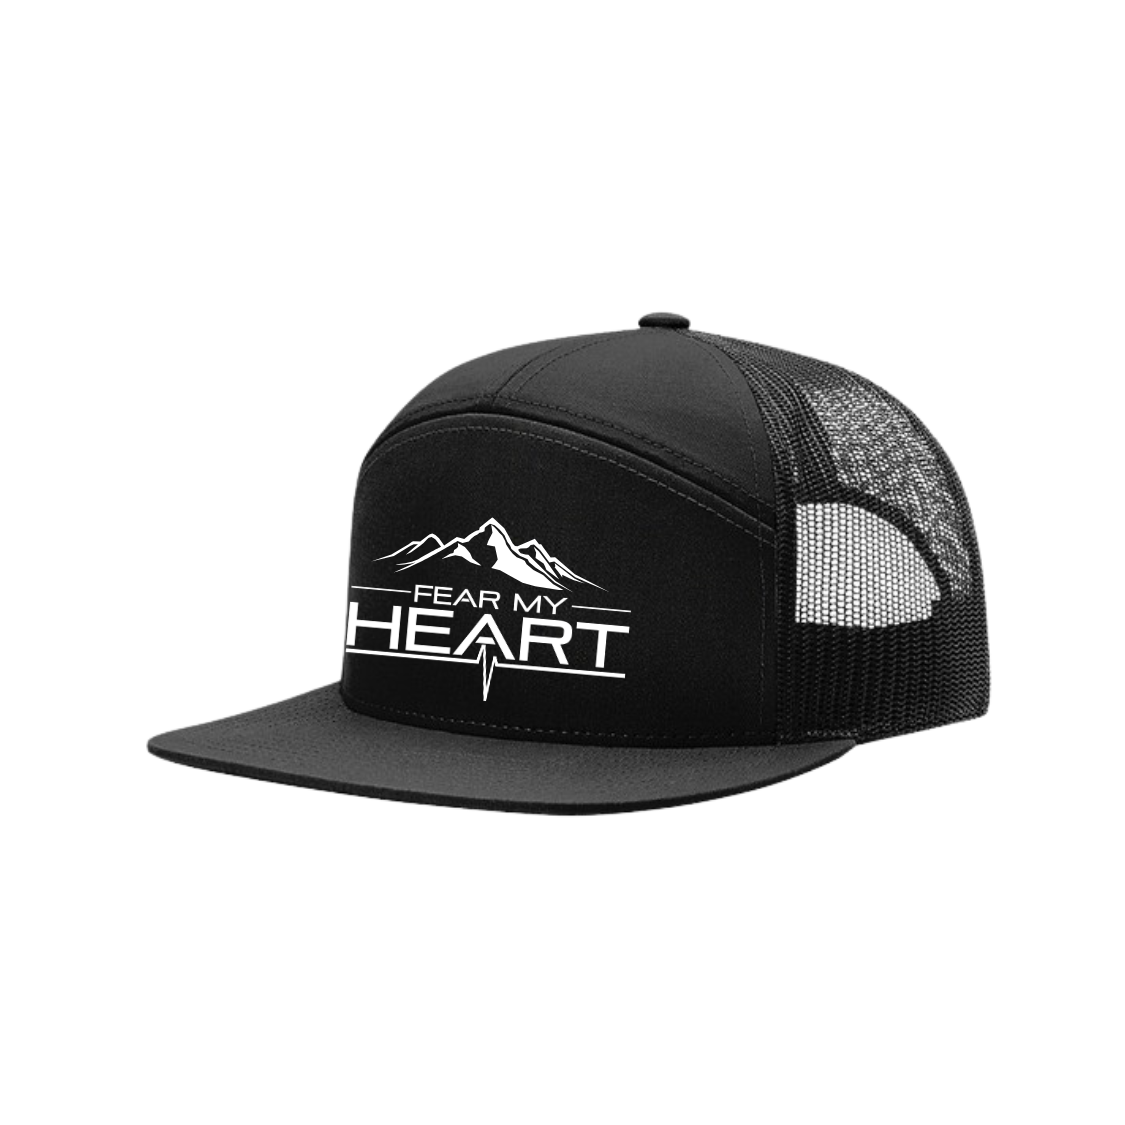 Fear My Heart Hat -  7 Panel Trucker Cap, Mountain